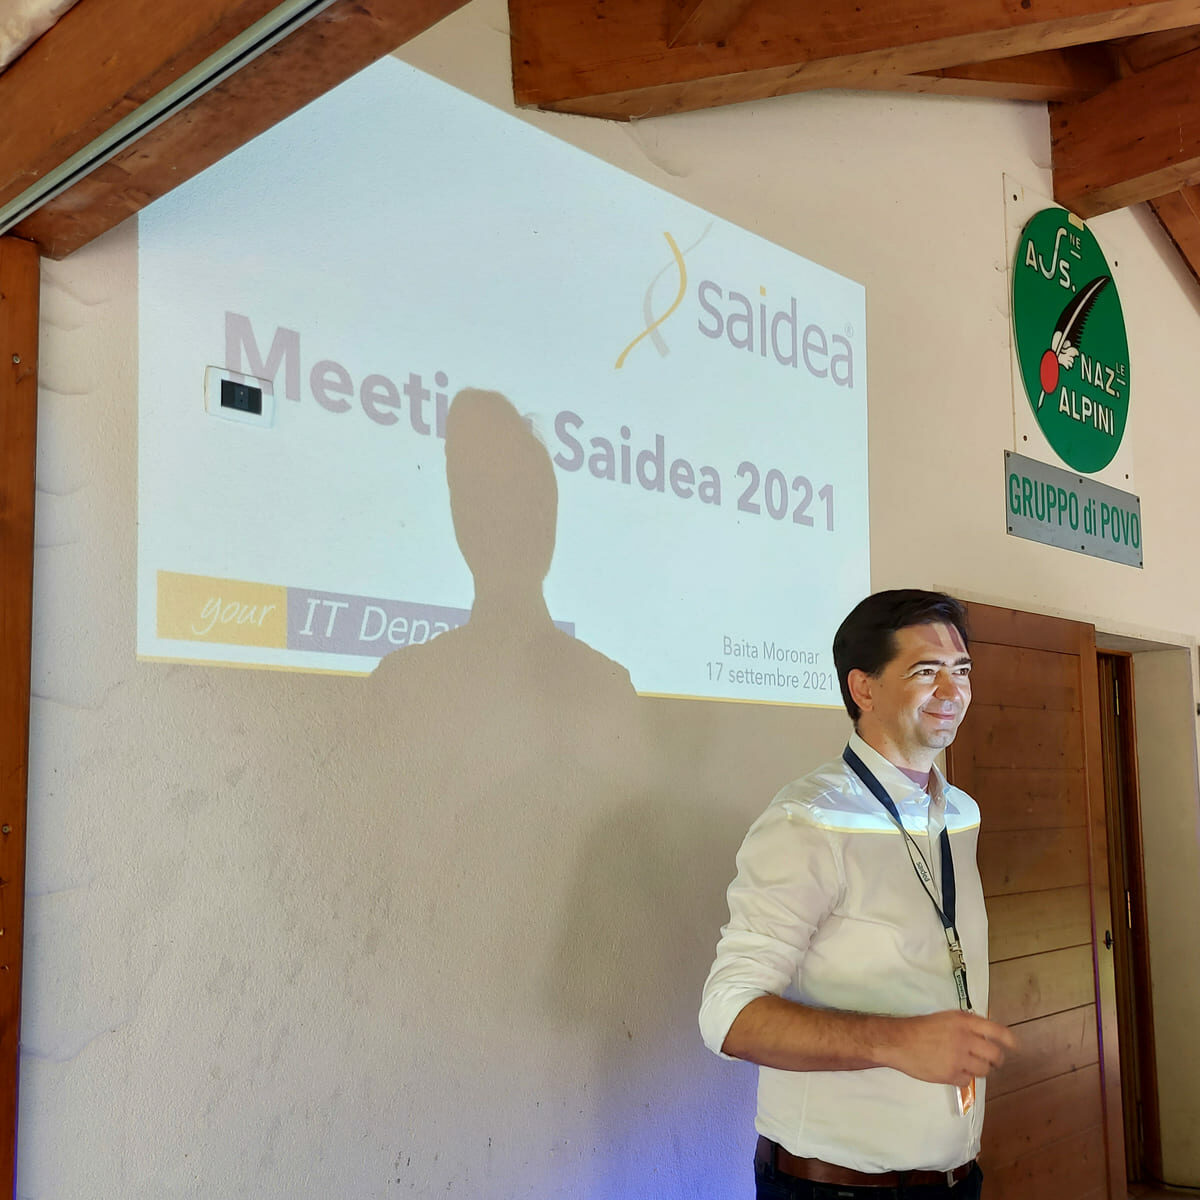 Al di fuori di una baita di montagna, il CEO di Saidea William Nicolussi presenta illuminato dalla slide proiettata sul muro con il testo "Meeting Saidea 2021"